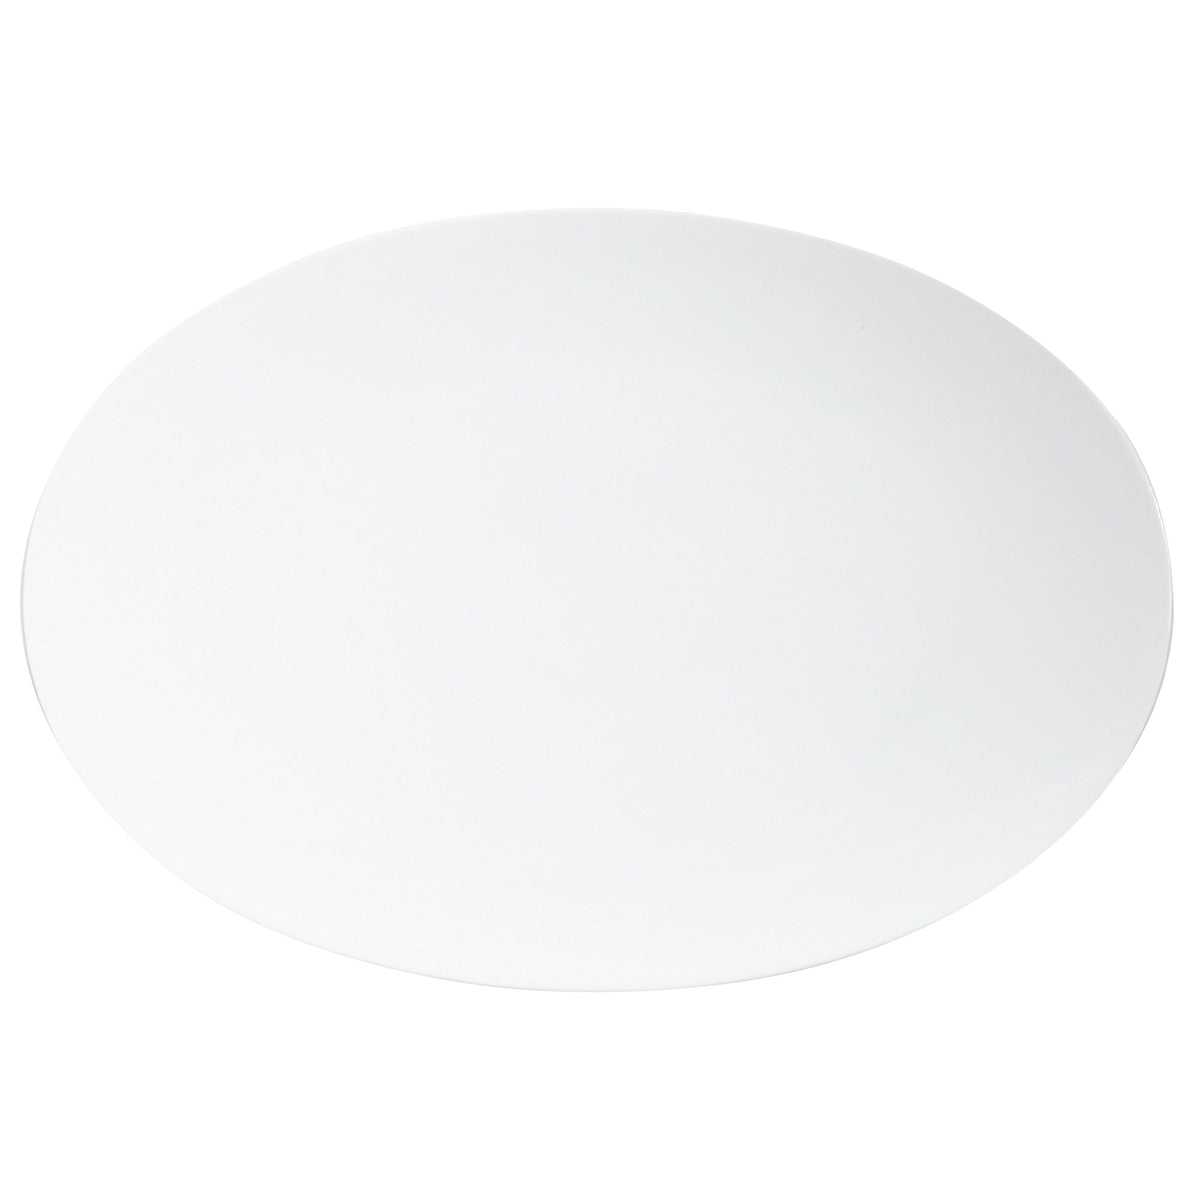 TAC 02 Oval Platter